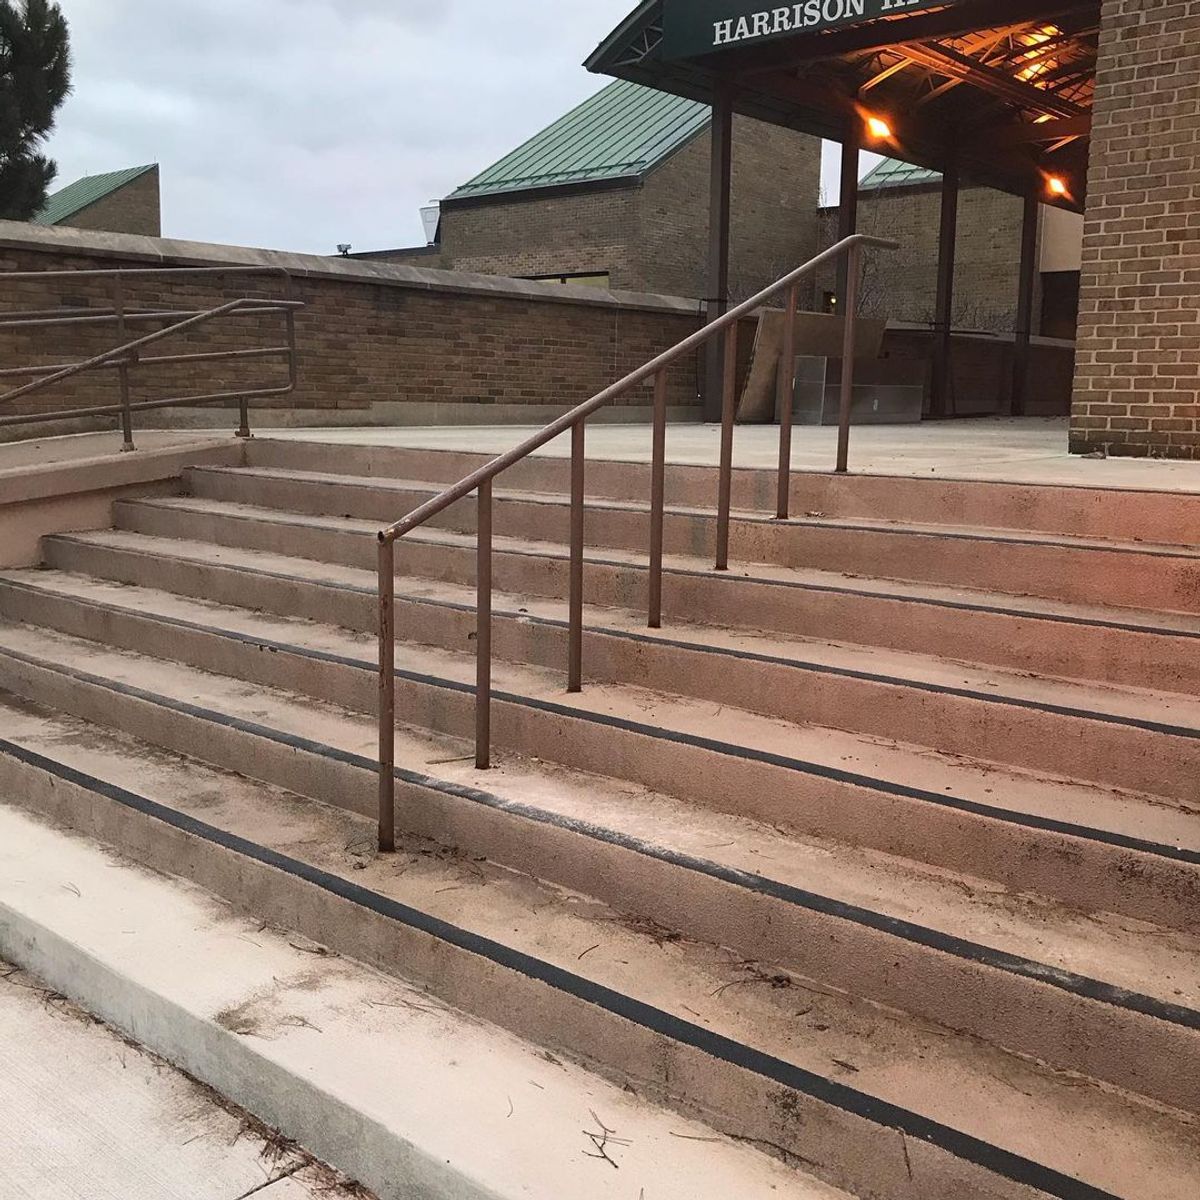 Image for skate spot Harrison High School 7 Stair Rail